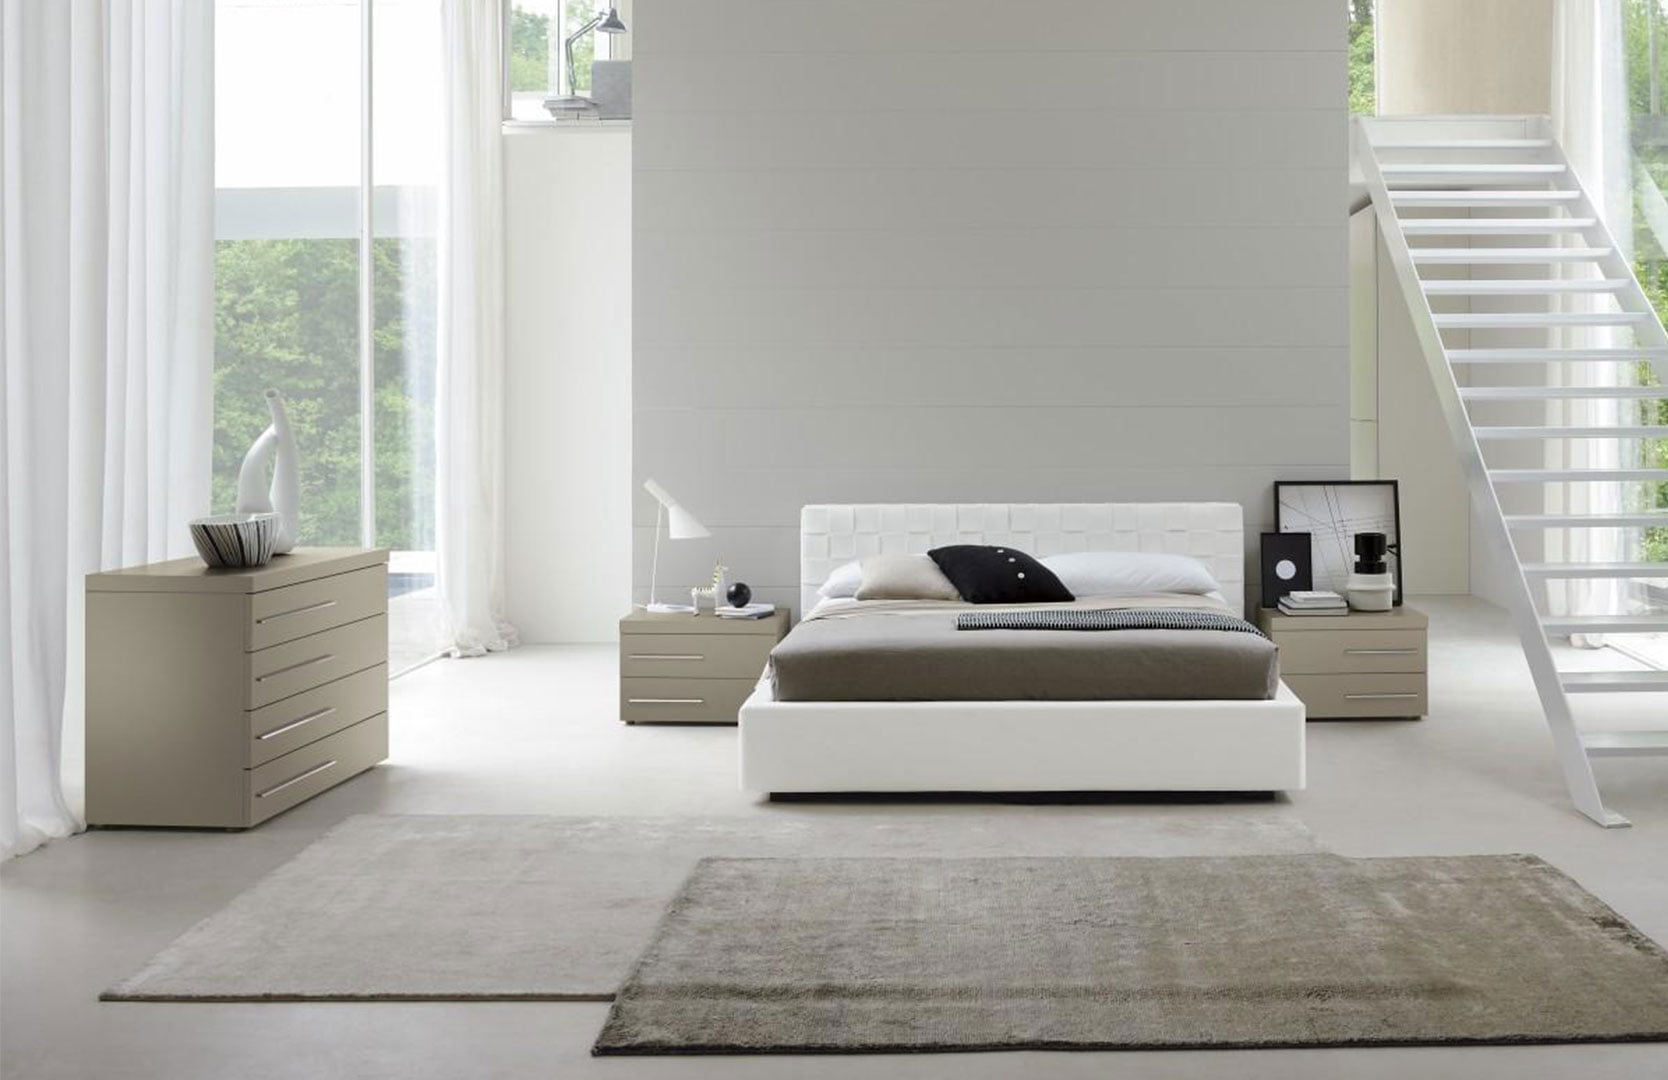 White bedroom design idea modern